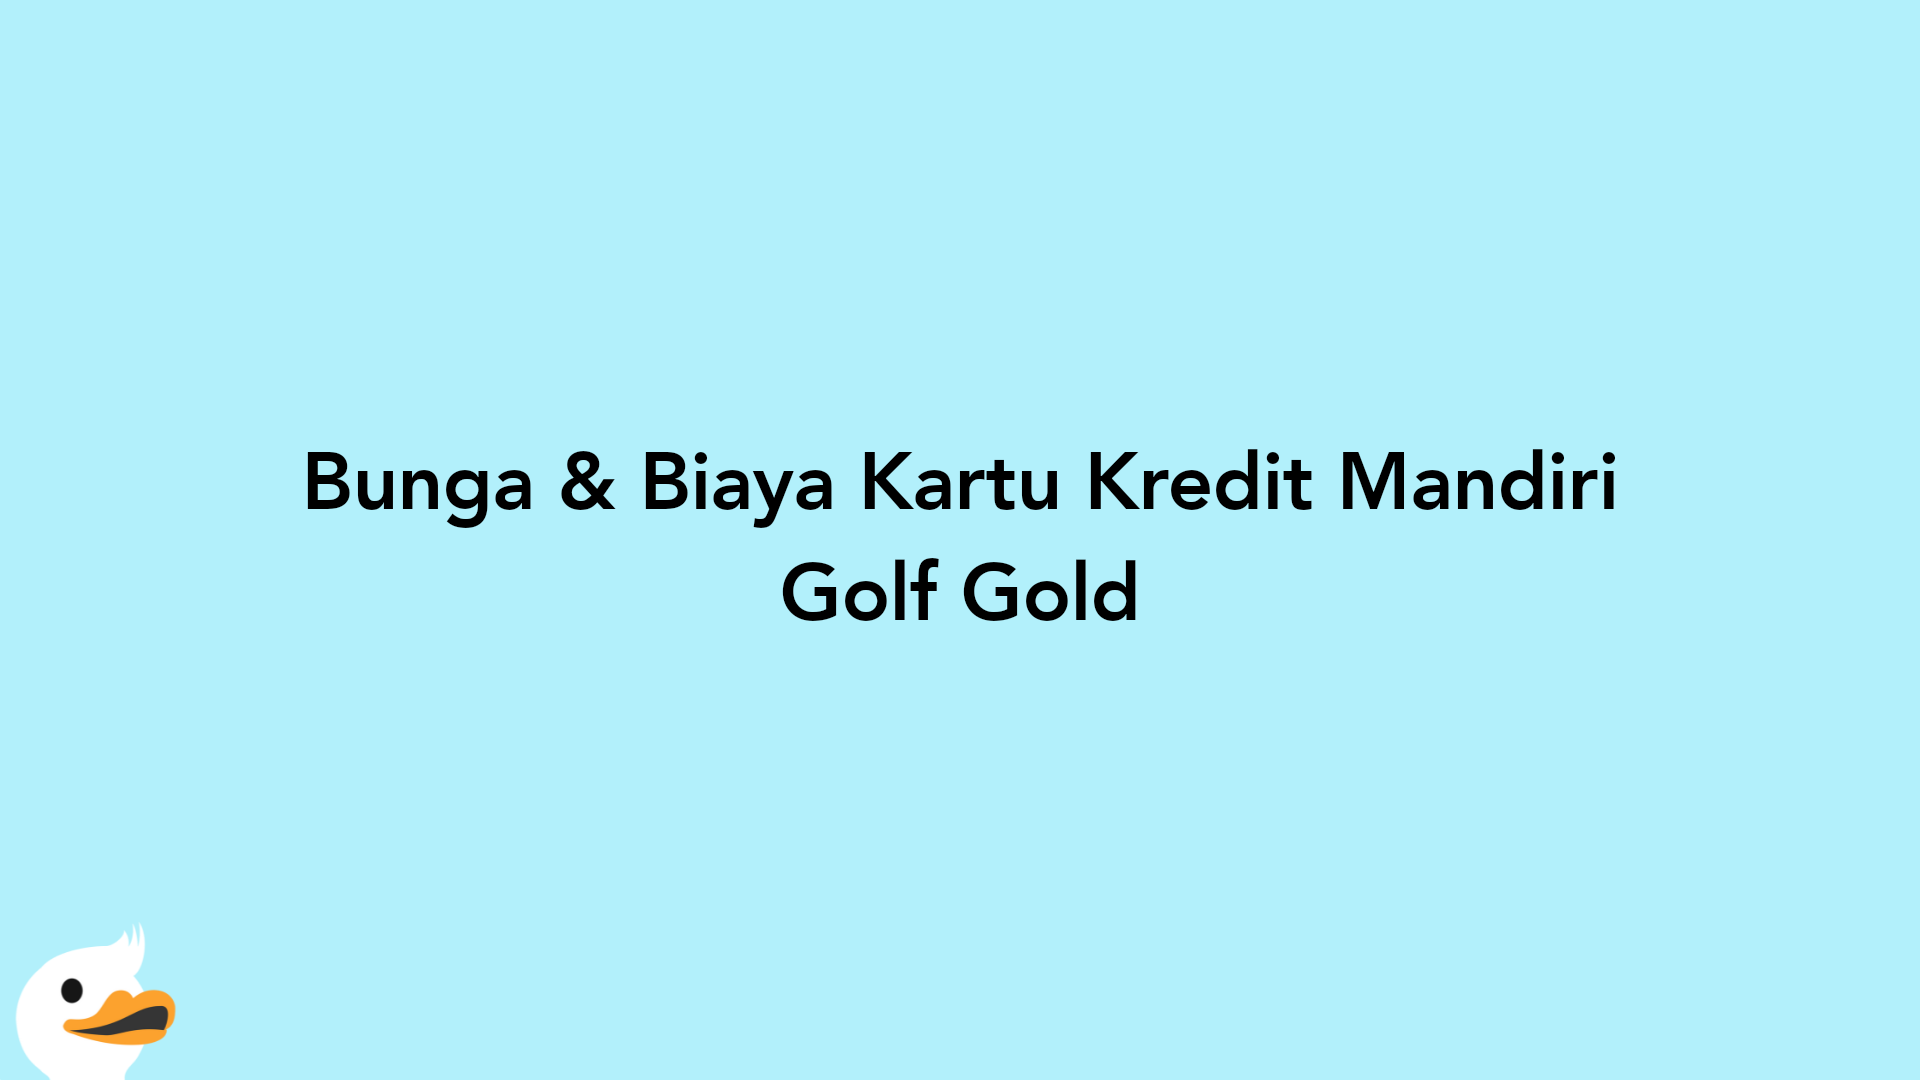 Bunga & Biaya Kartu Kredit Mandiri Golf Gold